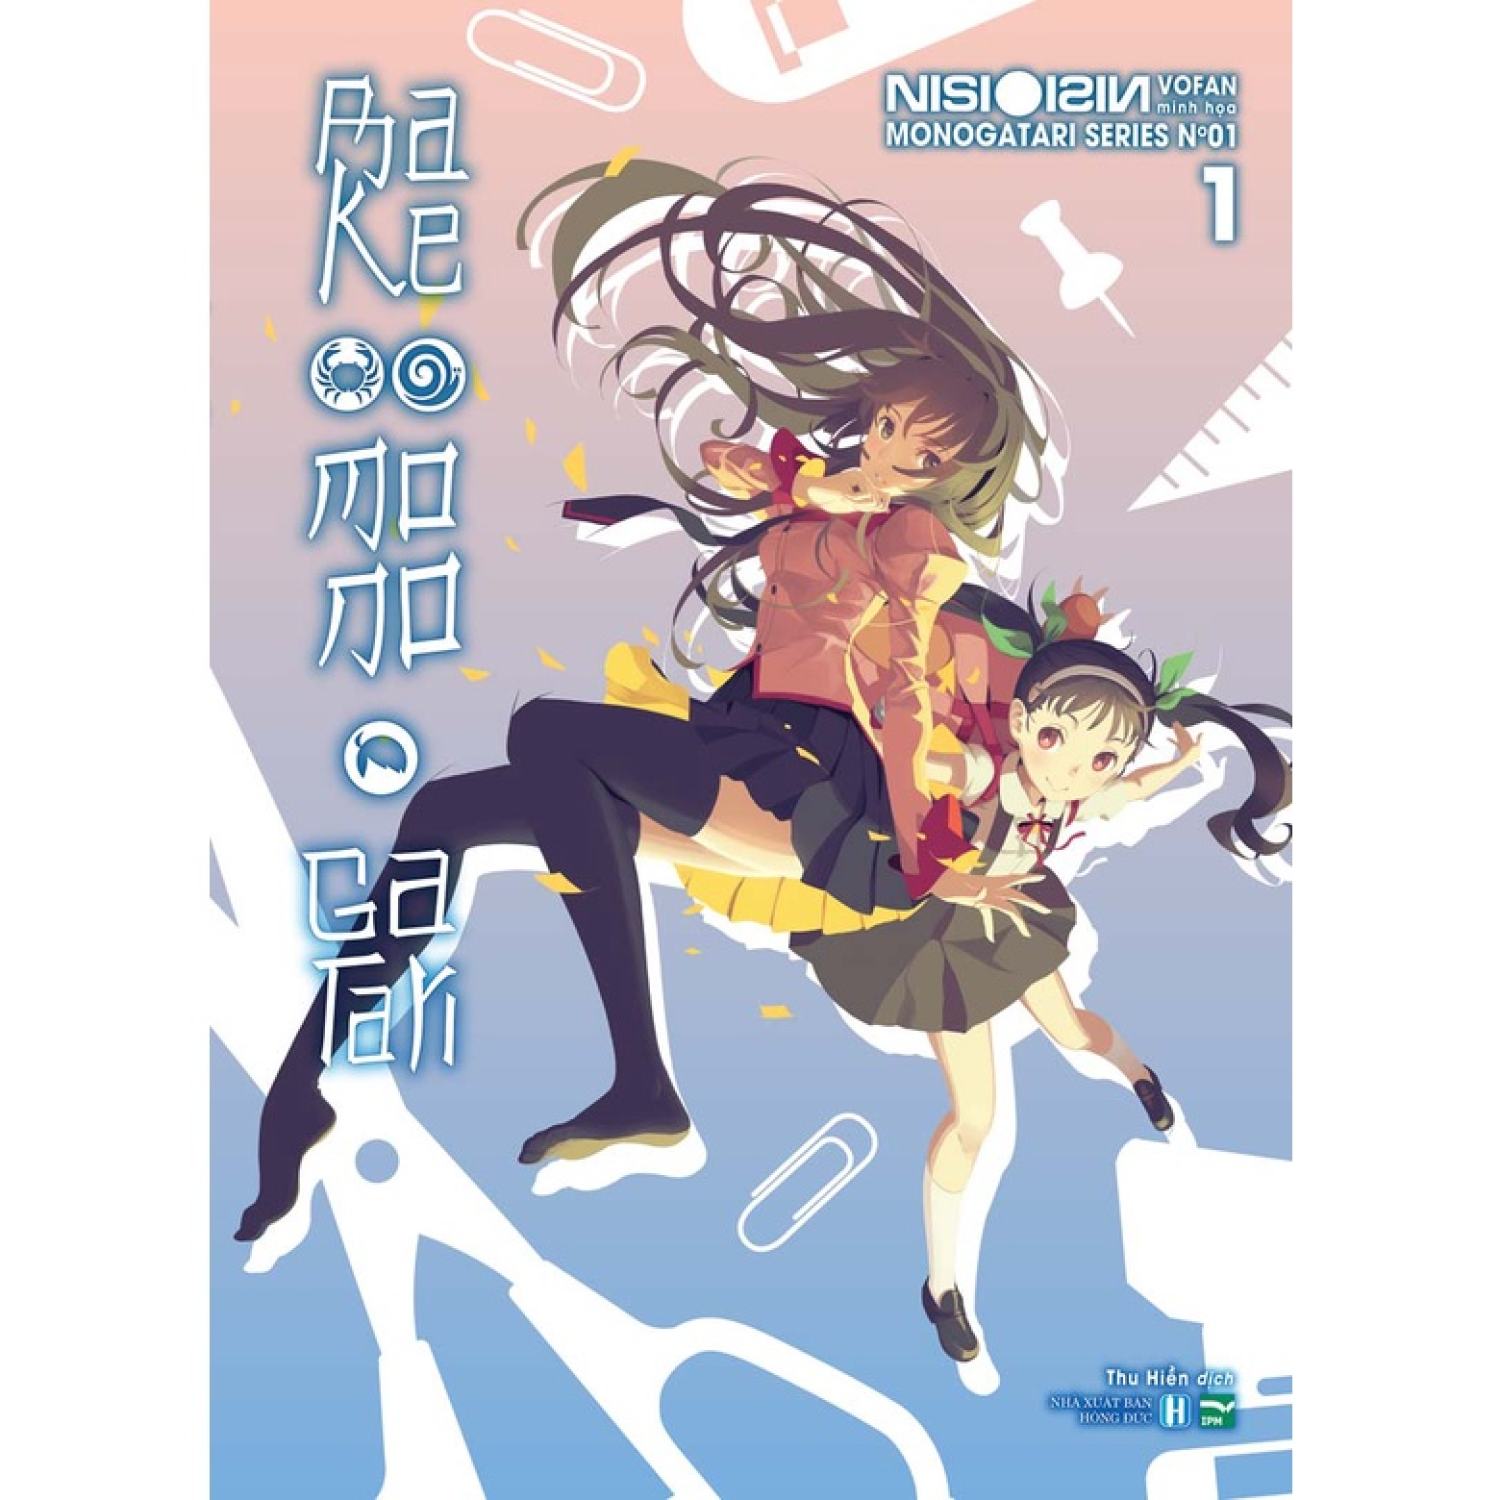 Sách Bakemonogatari - Tập 1 - Bản giới hạn, đặc biệt và phổ thông - Light Novel - IPM